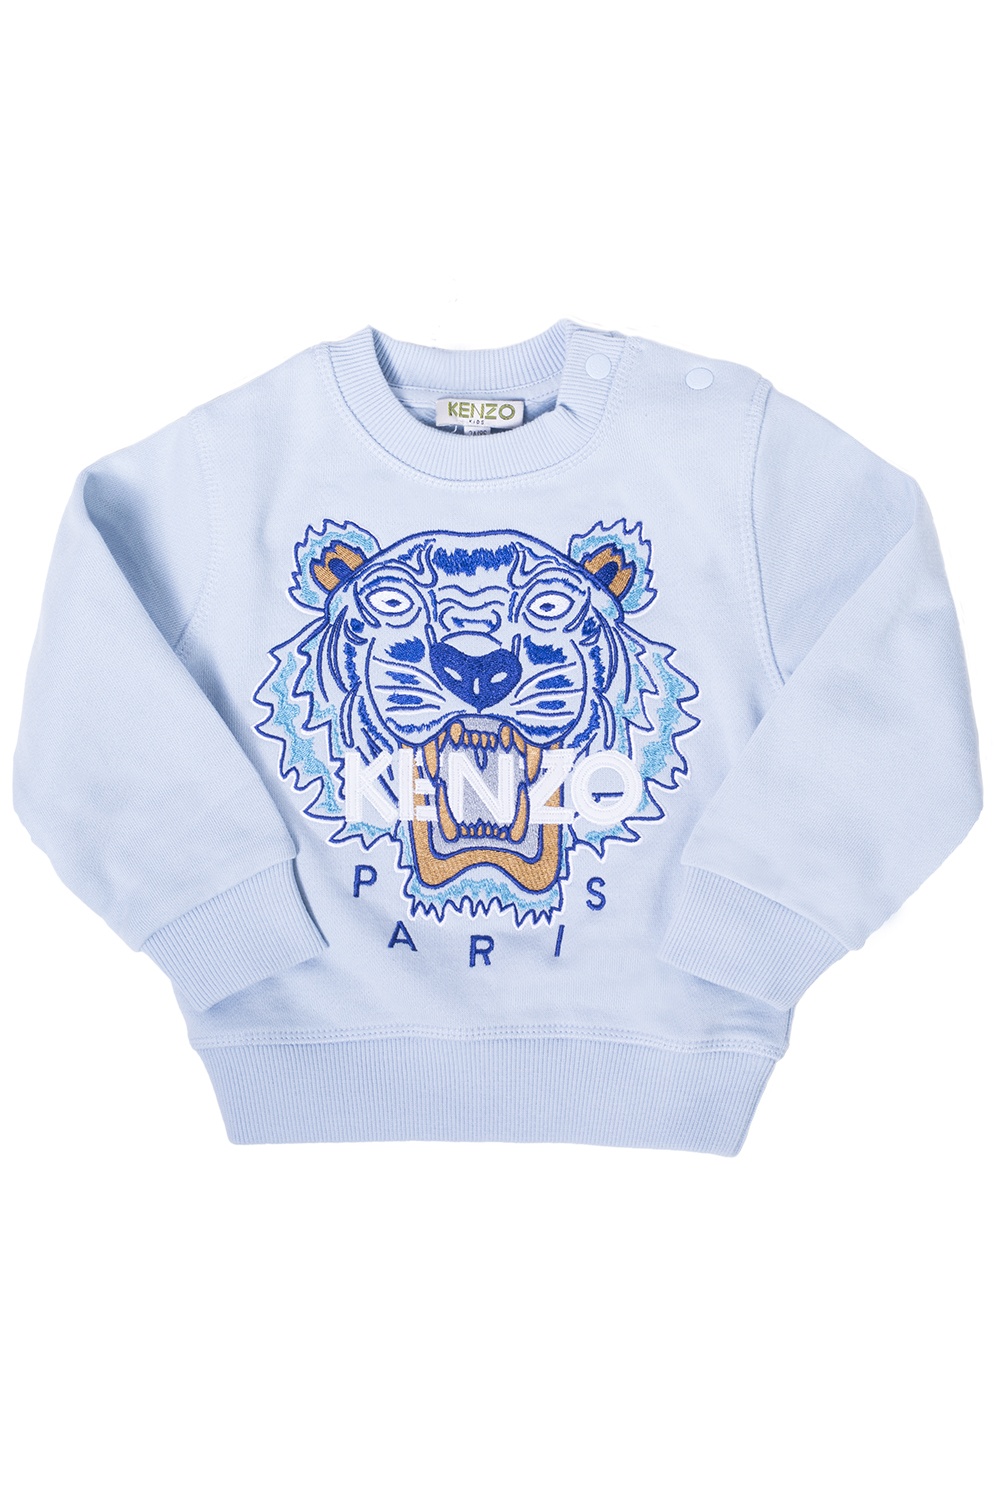 baby blue kenzo sweatshirt